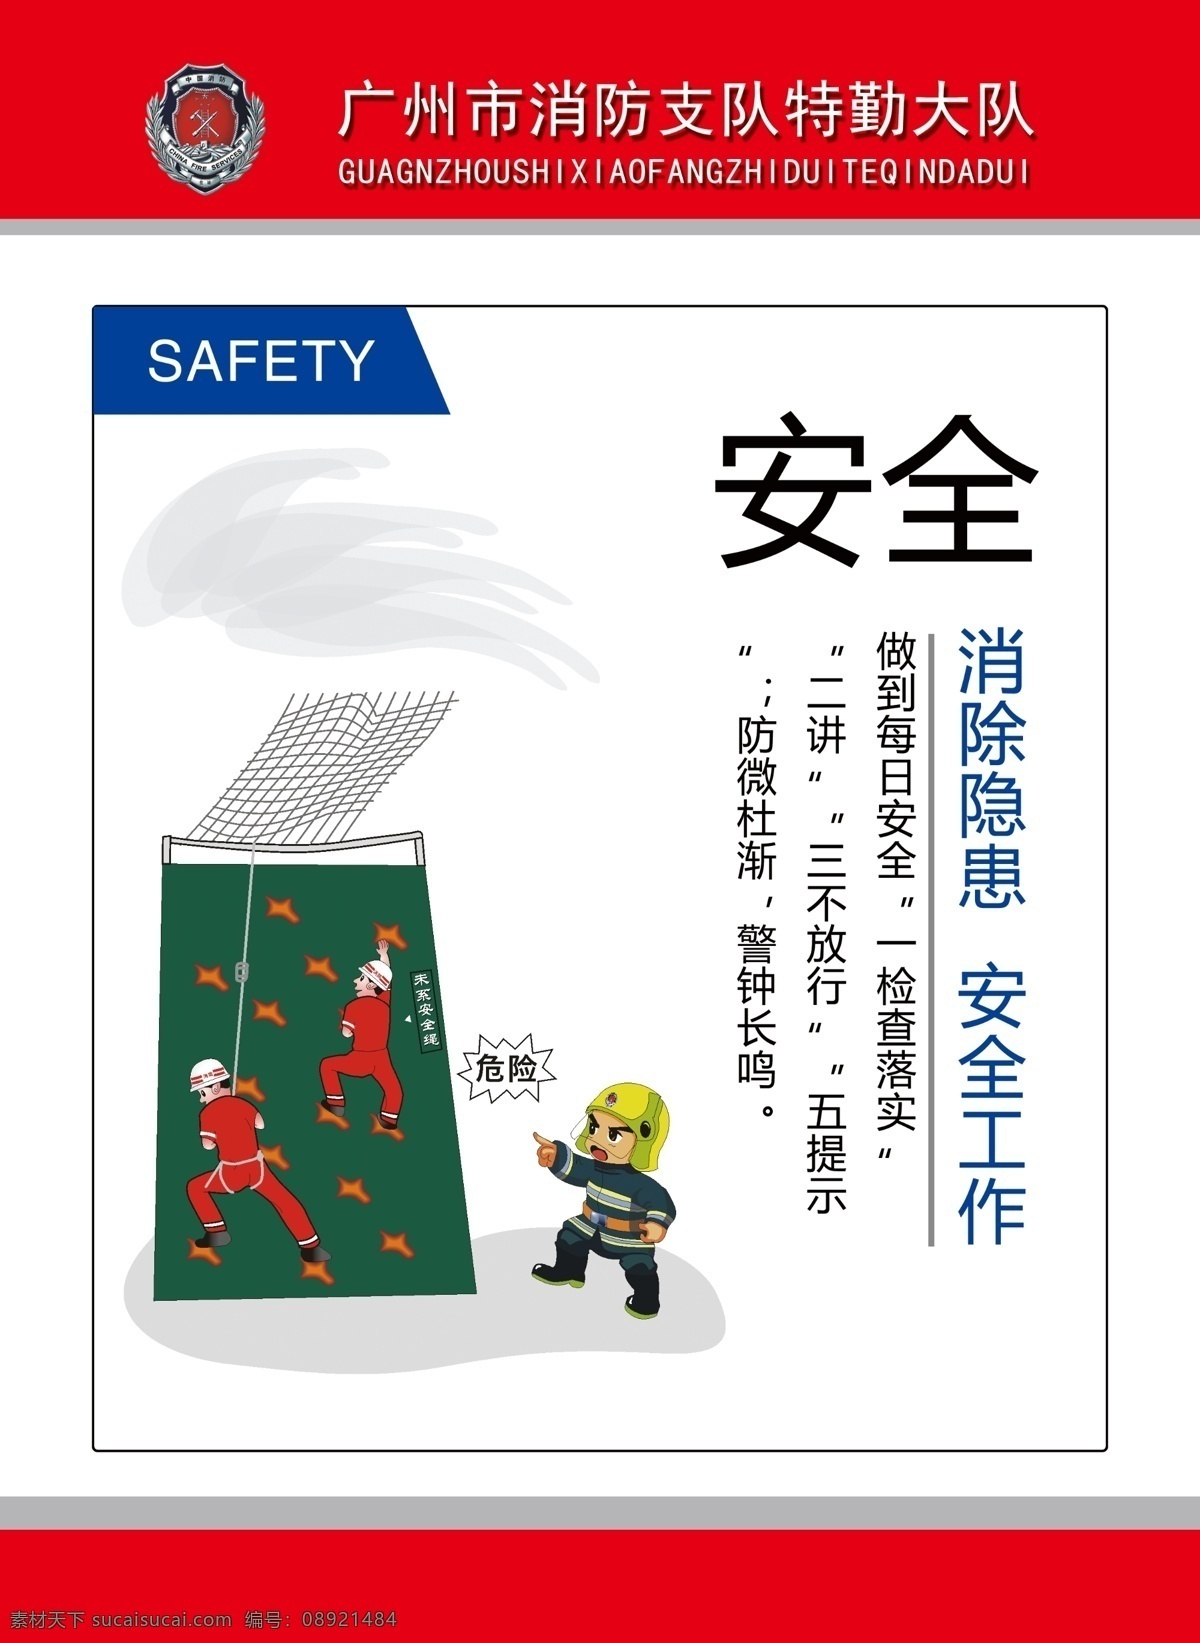 安全文化挂图 消防安全 安全教育 安全管理 安全制度 安全口号 安全标语 安全漫画